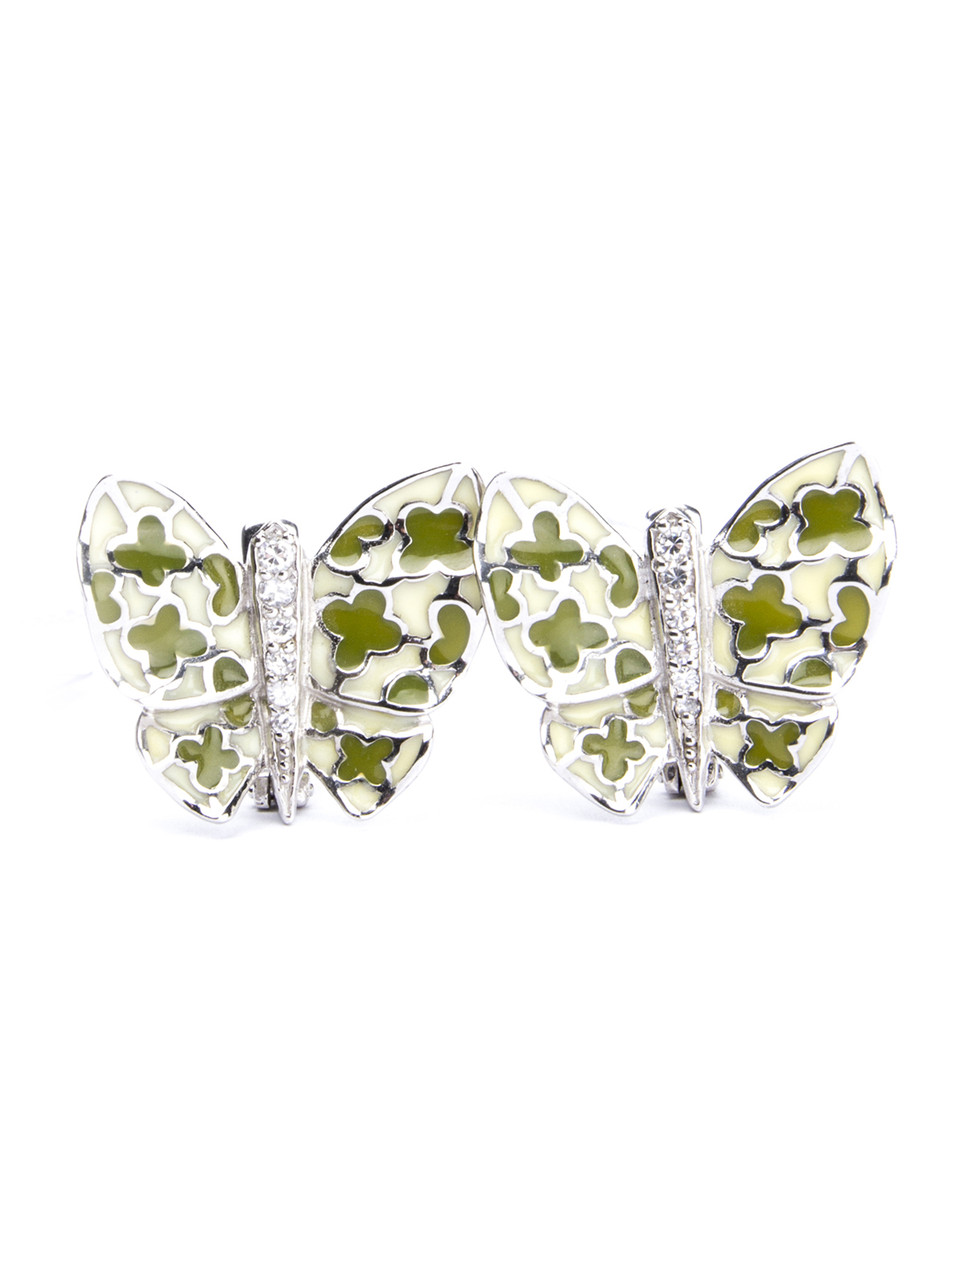 Сережки срібні з ювелірною емаллю "Метелики" SE950-зл